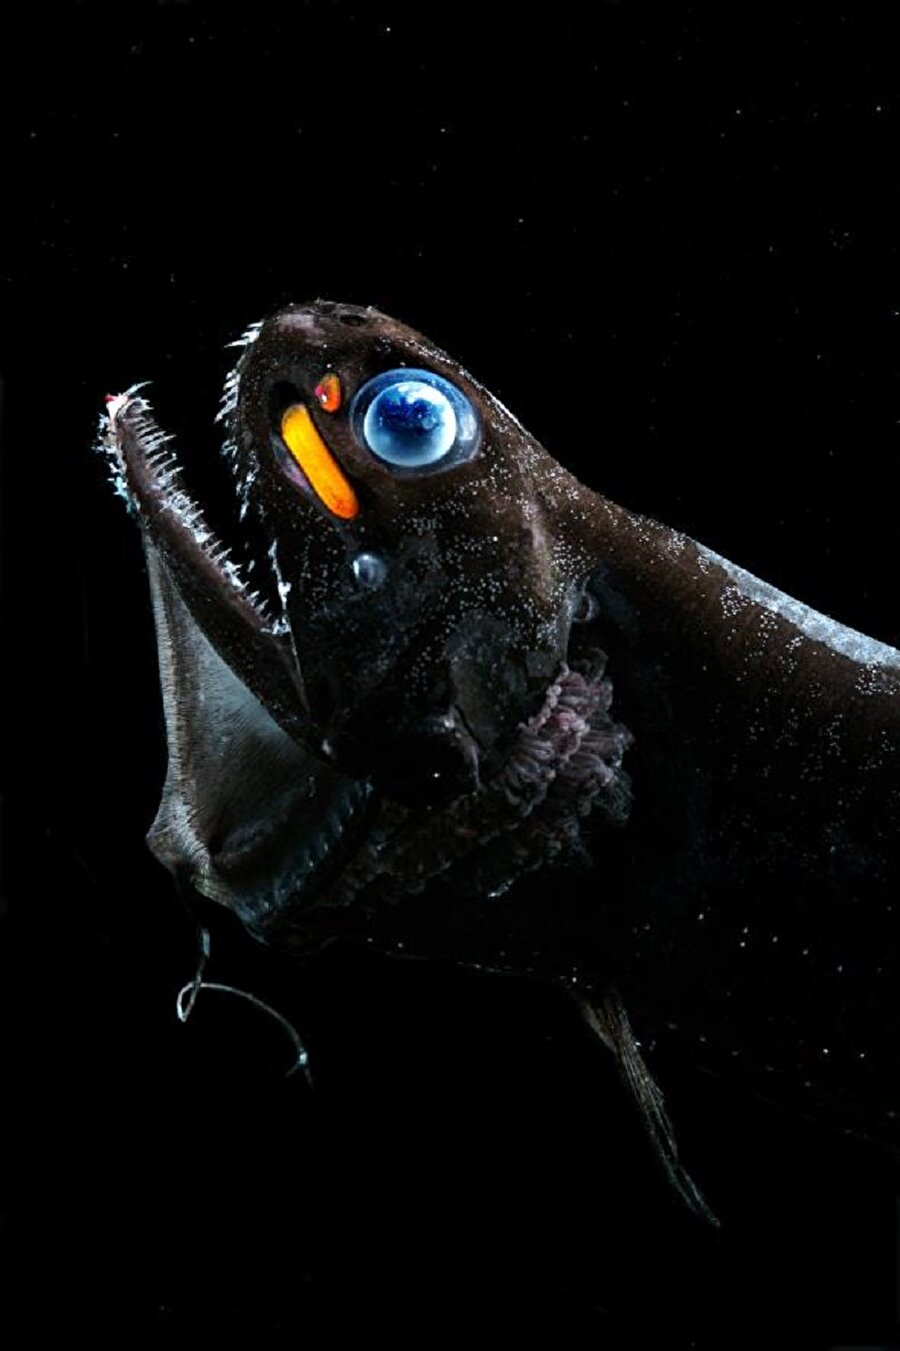 Fotoforlar
Ejder balıklarının gözlerinin altında kırmızı,mavi ve turuncu renklere sahip 3 tane 'fener' vardır. Ejder balıkları bu fotoforlar sayesinde hemen hemen her rengi ayırt edebilir.